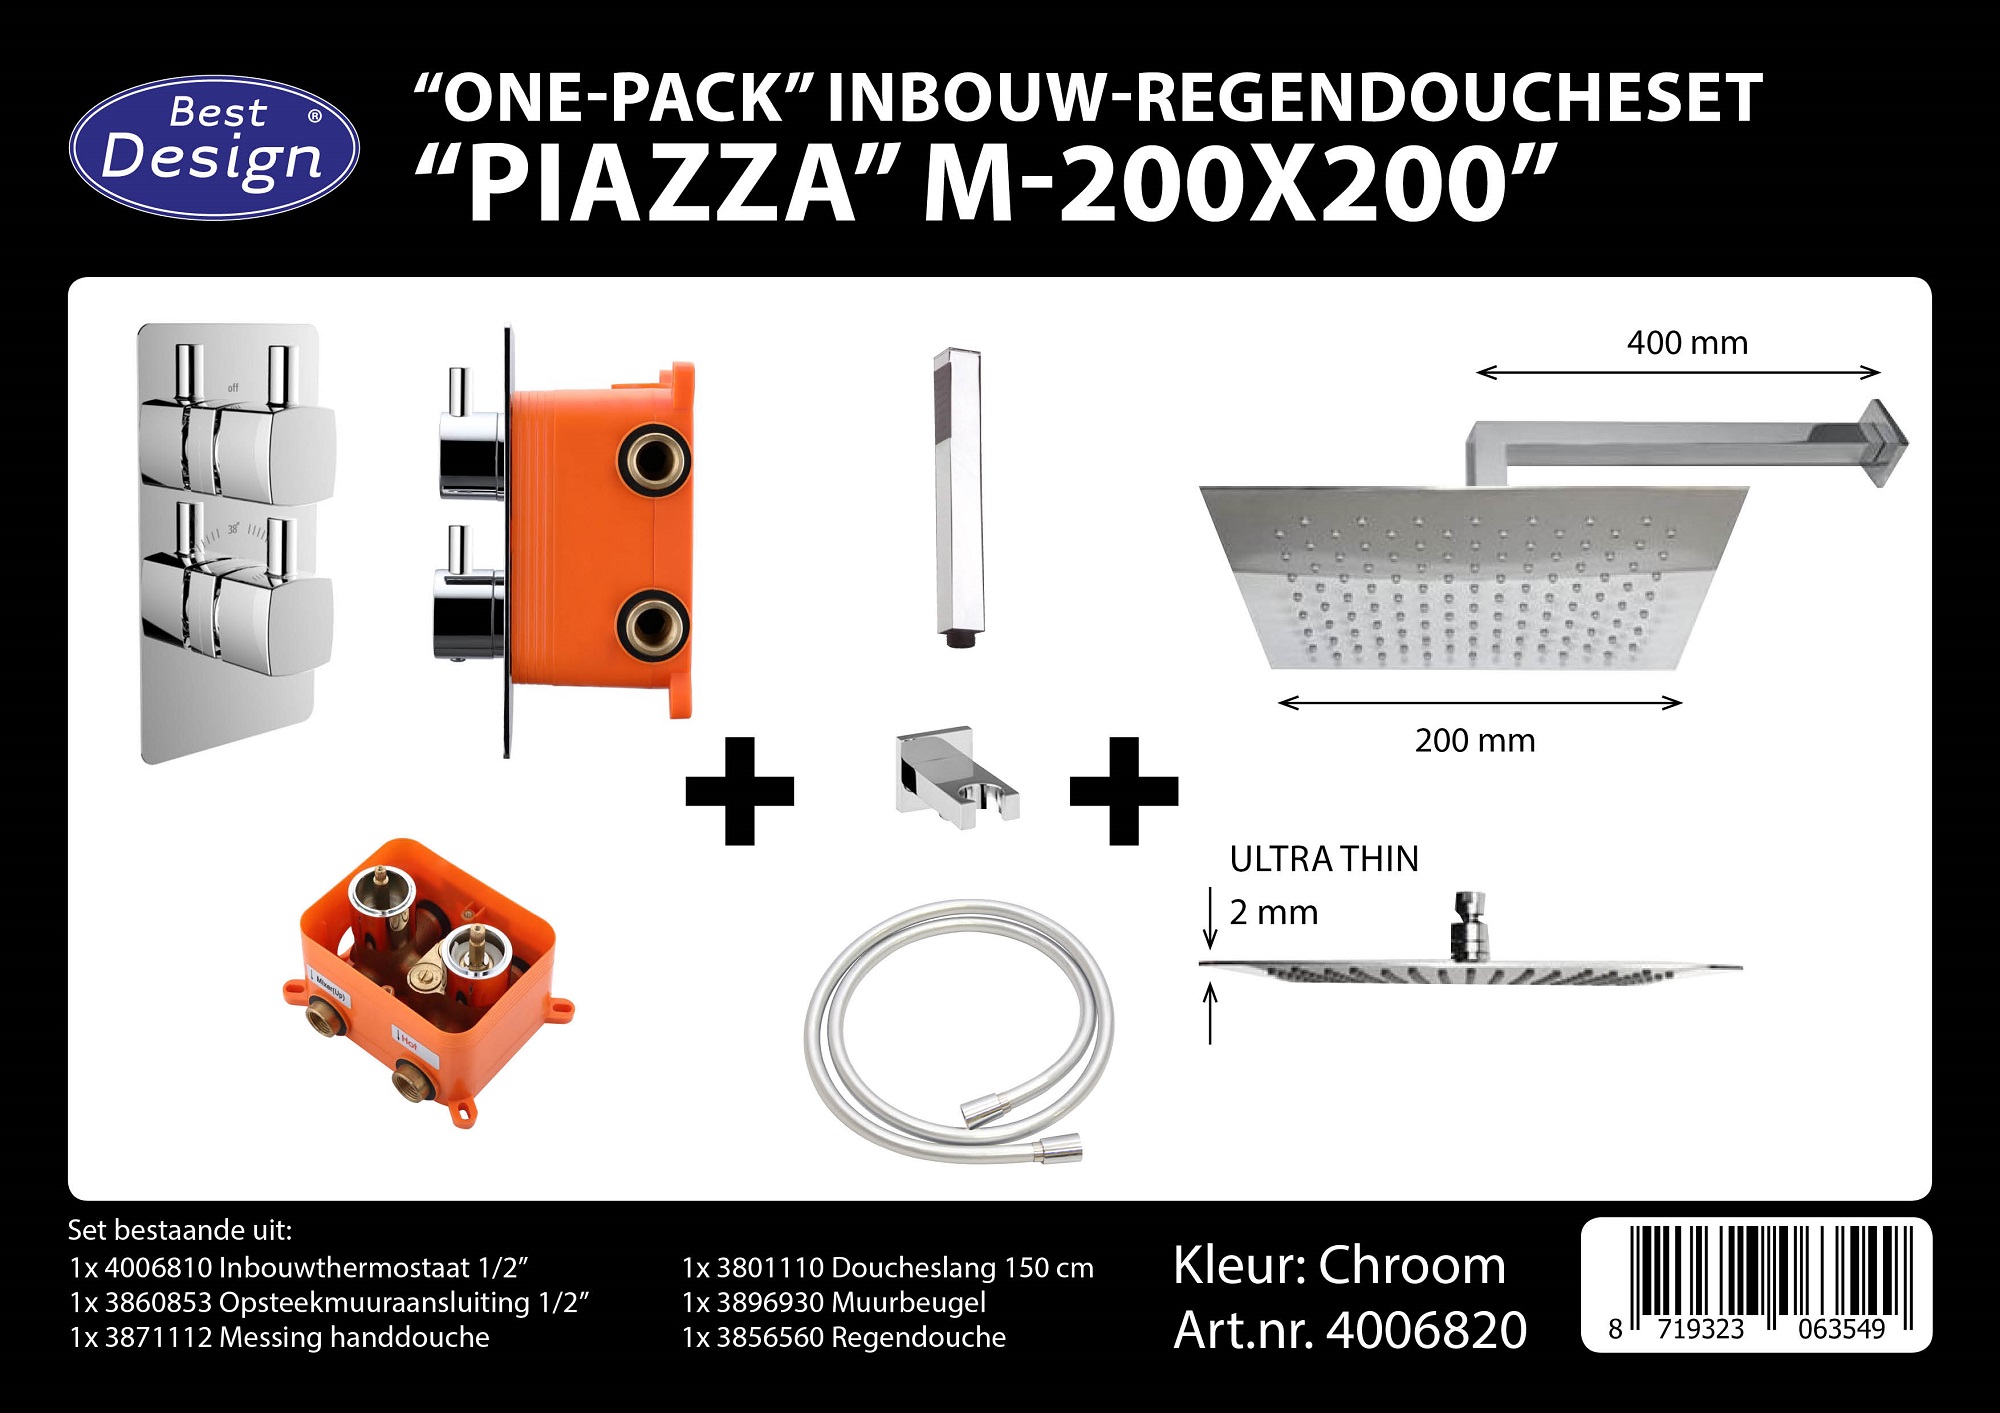 Best design one pack inbouw regendoucheset inb.box piazza vierkant m 200x200